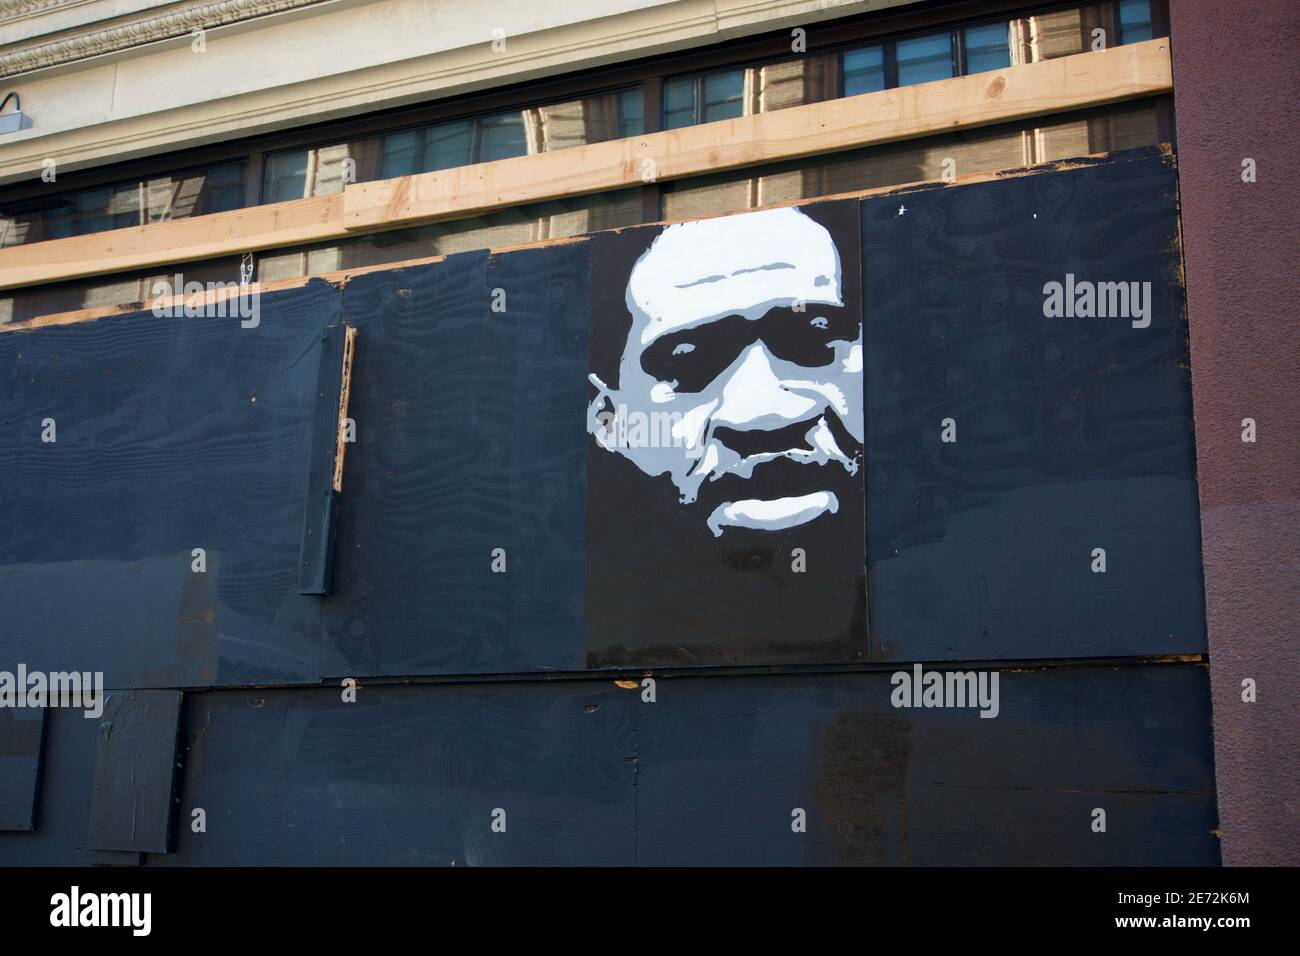 17 octobre 2020. Peinture du visage de George Floyd, peinture murale d'art de rue Black Lives Matter, sur des fenêtres à bord. Market Street, San Francisco, CA, États-Unis Banque D'Images